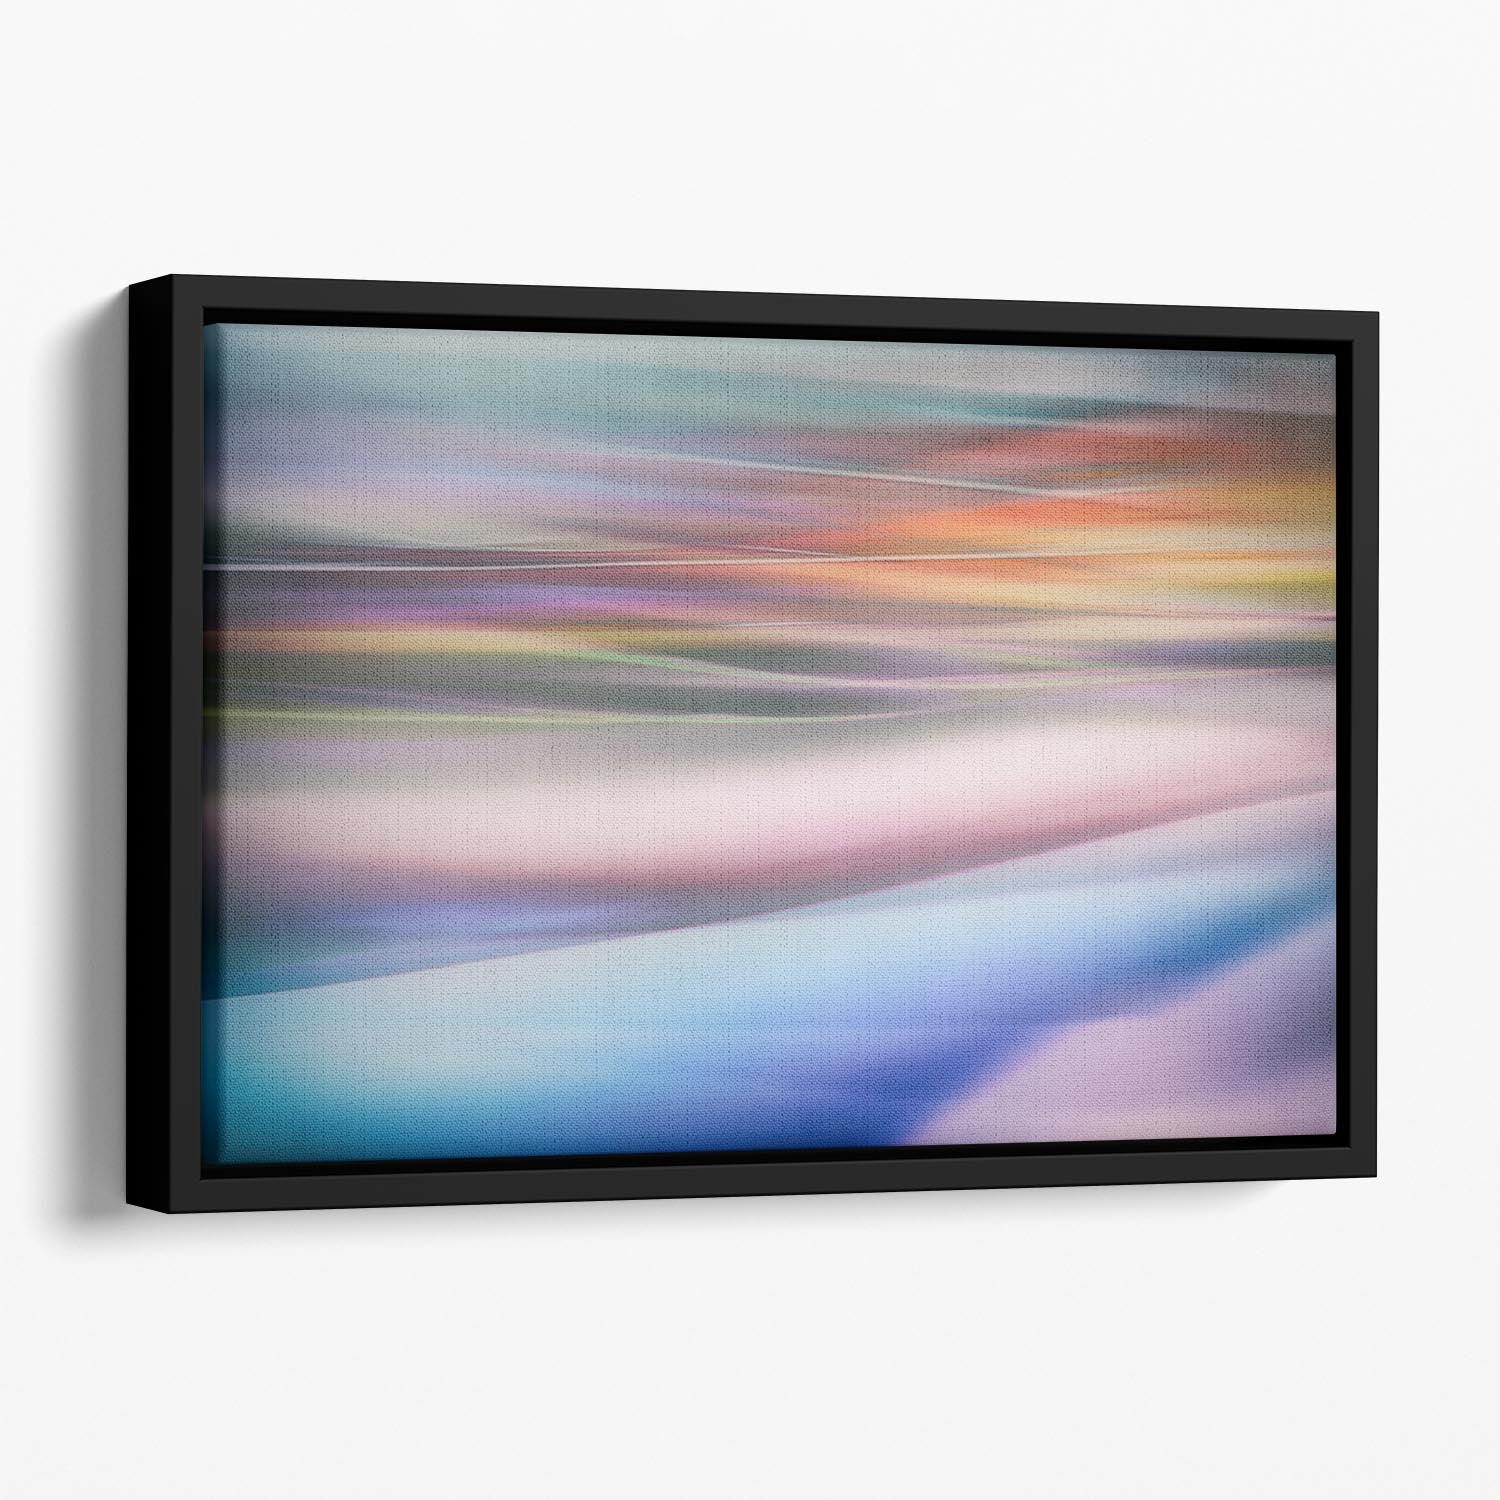 Coloured Waves 2 Floating Framed Canvas - Canvas Art Rocks - 1